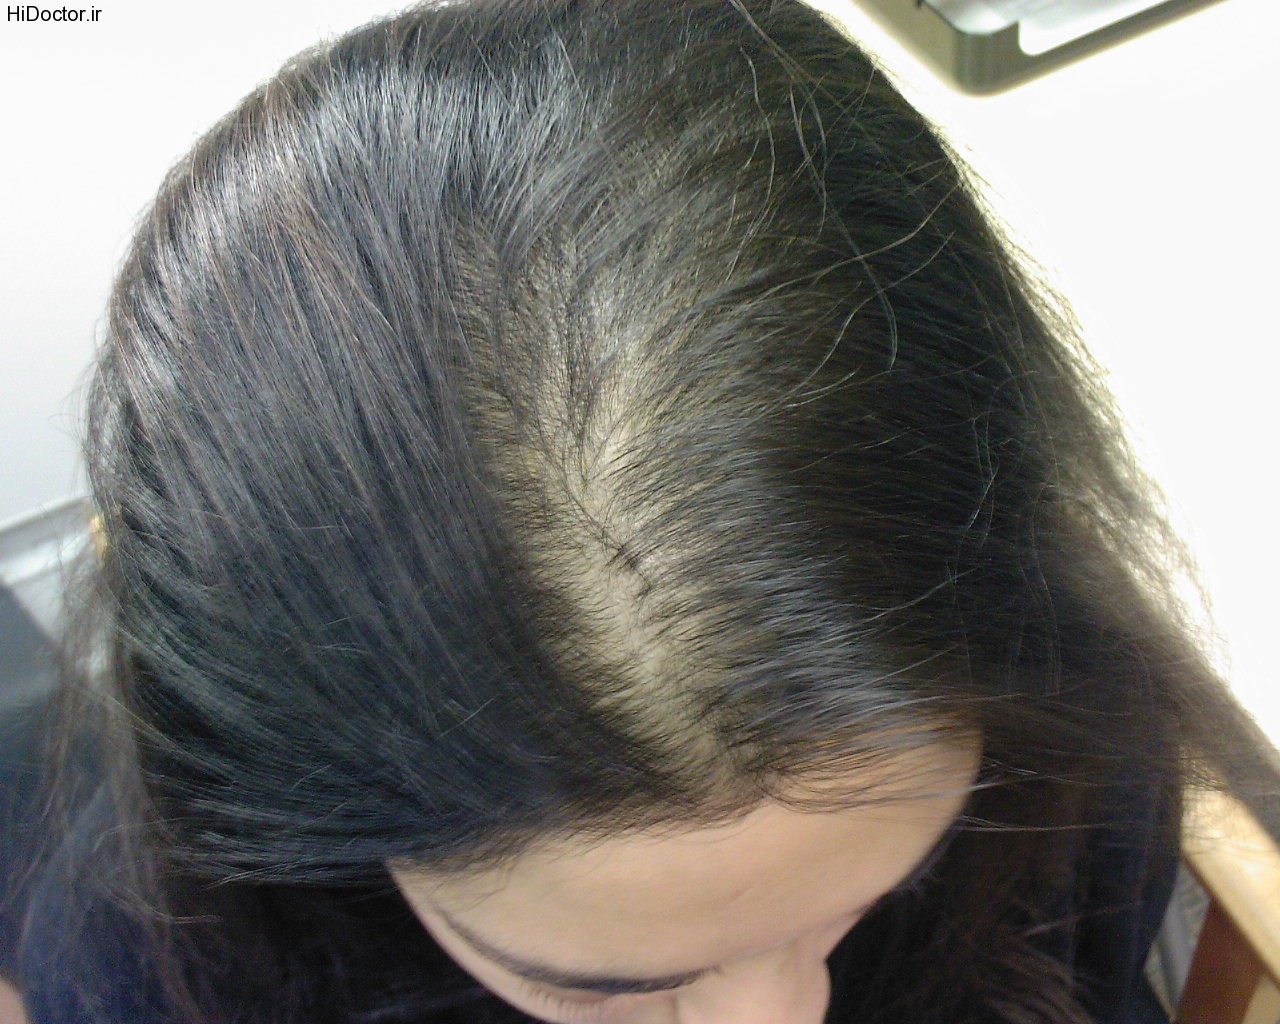 درمان ریزش غیر طبیعی مو